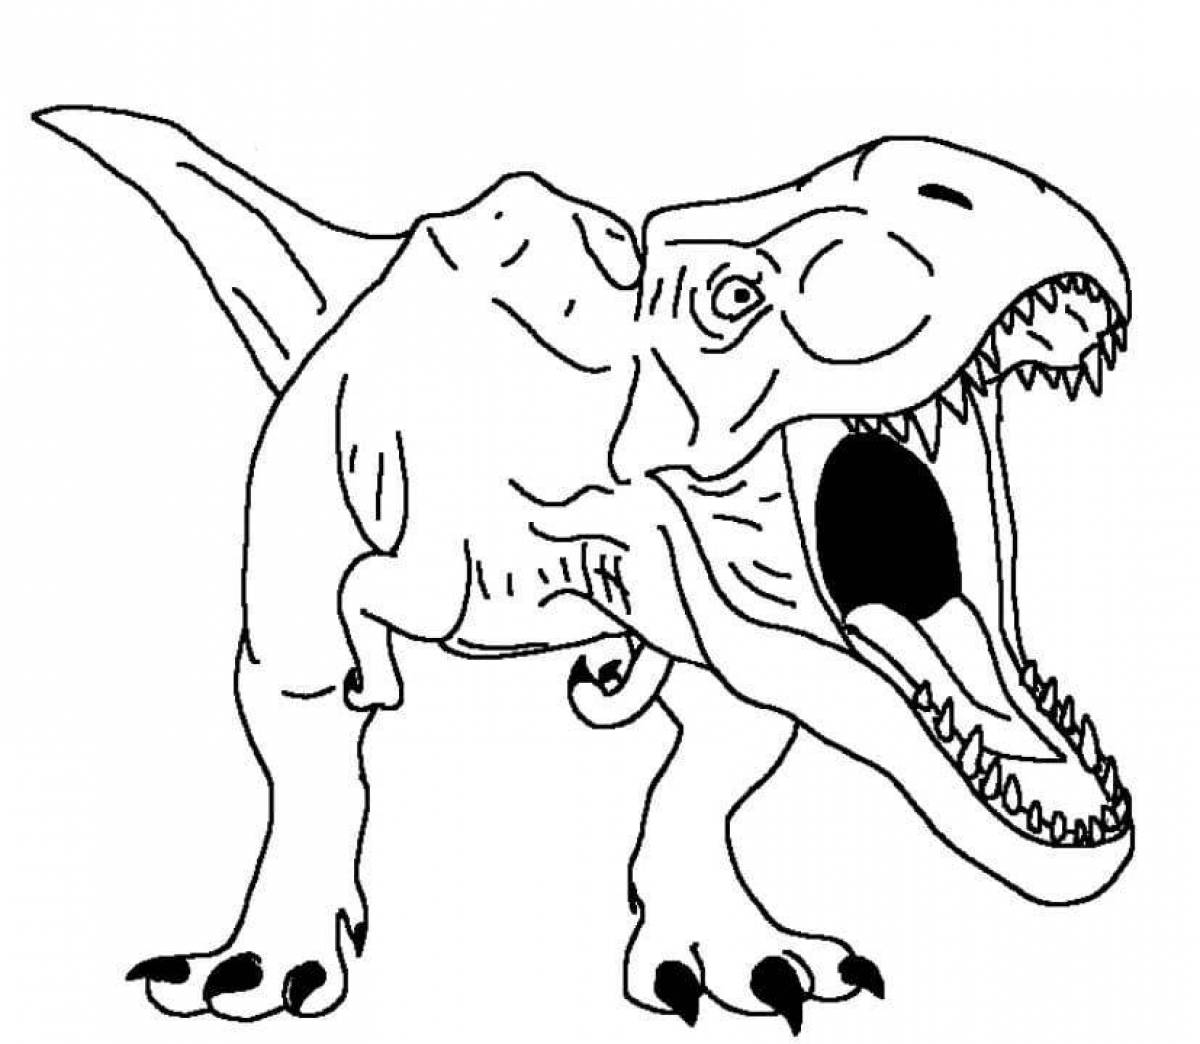 Magic tarbosaurus coloring book for kids